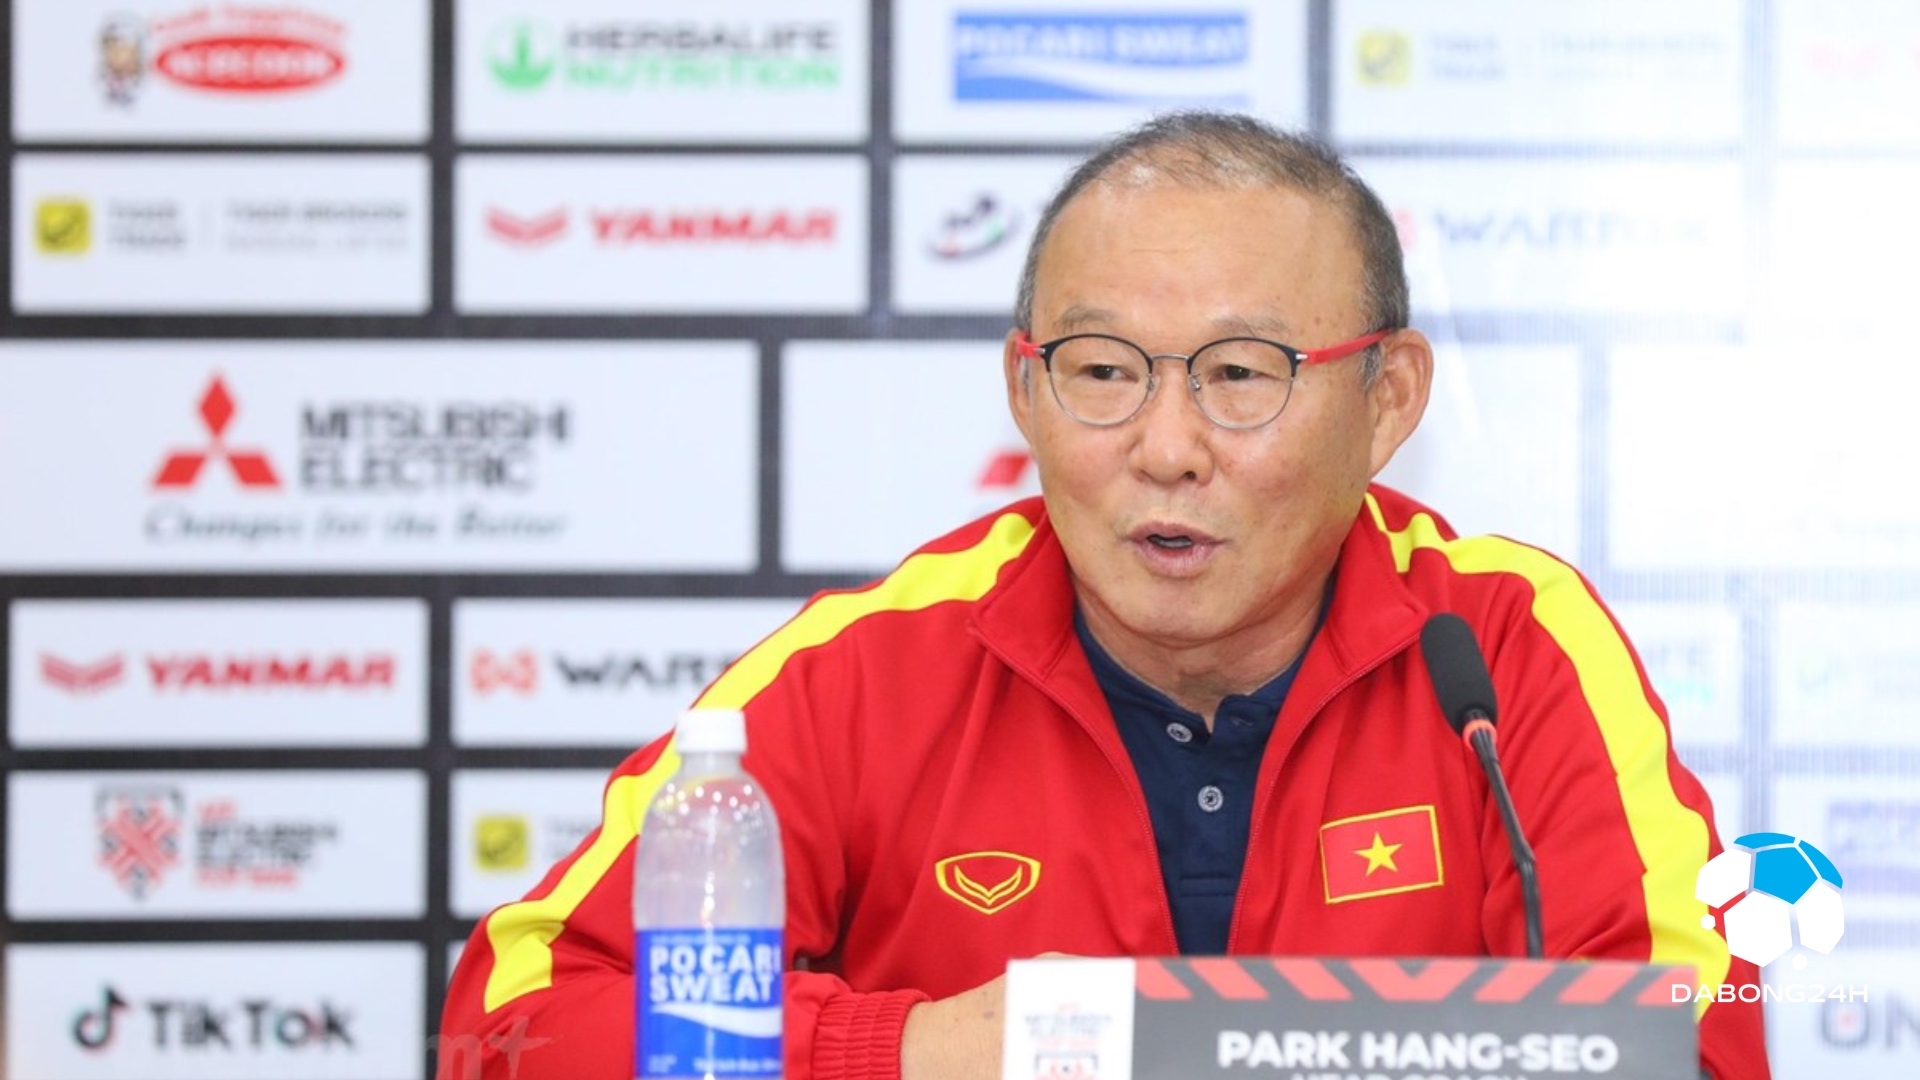 Danh sách các huấn luyện viên nổi bật của bóng đá Việt Nam - 2